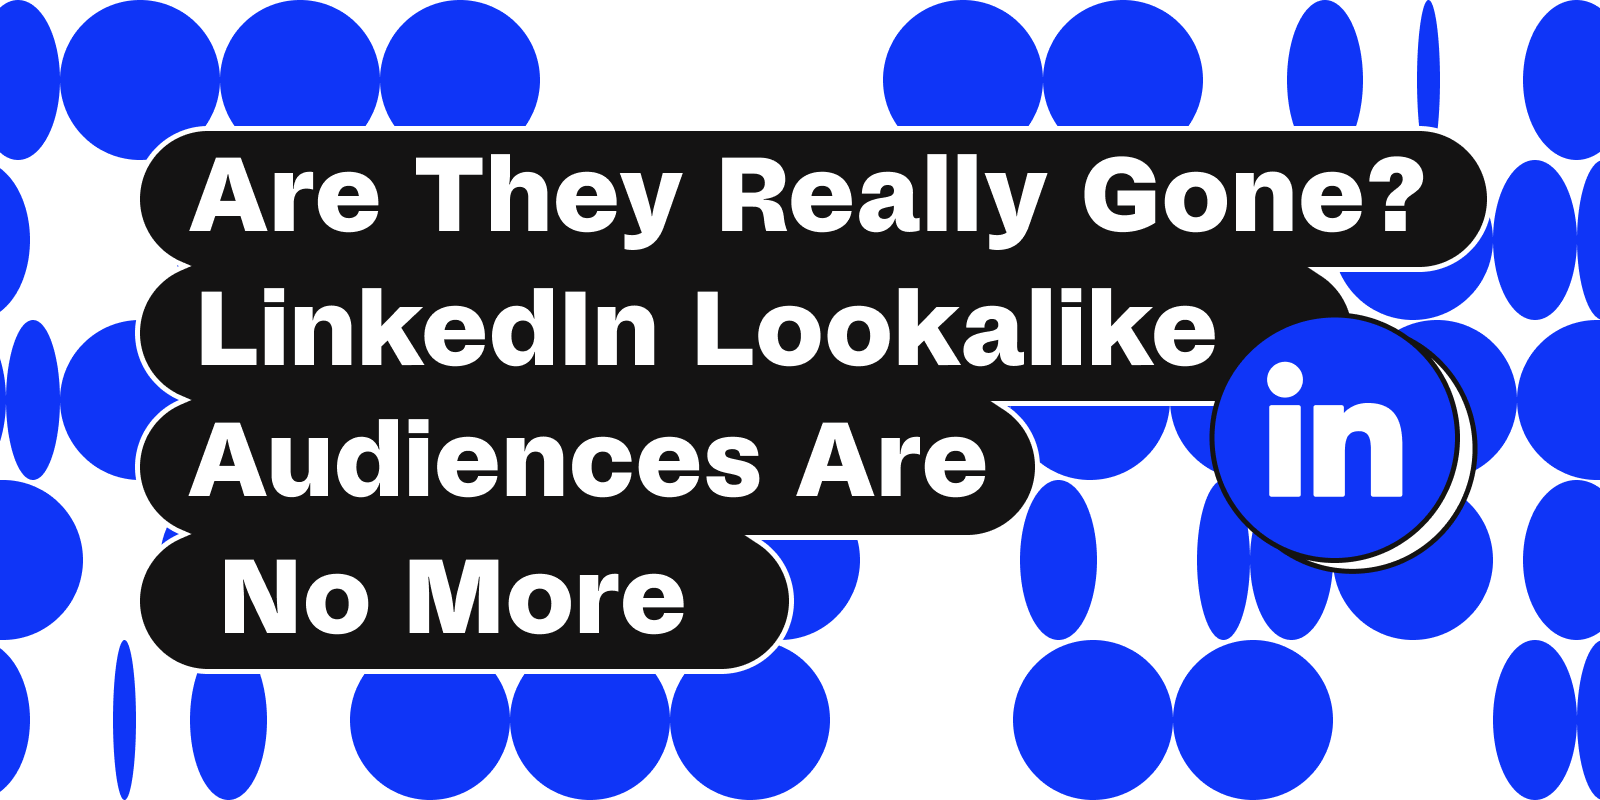 LinkedIn Lookalike Audiences